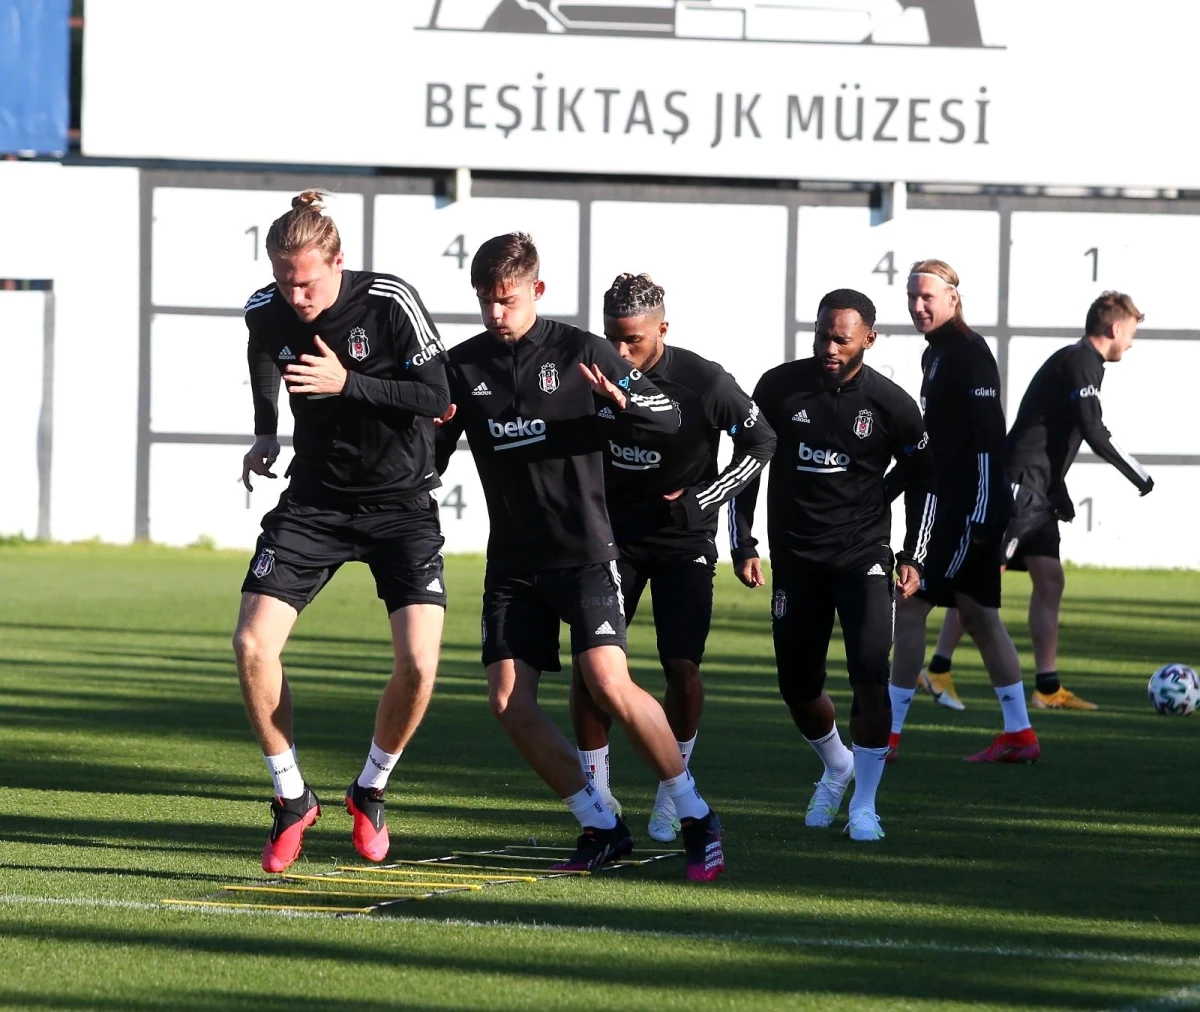 Beşiktaş, Fatih Karagümrük maçının hazırlıklarını tamamladı